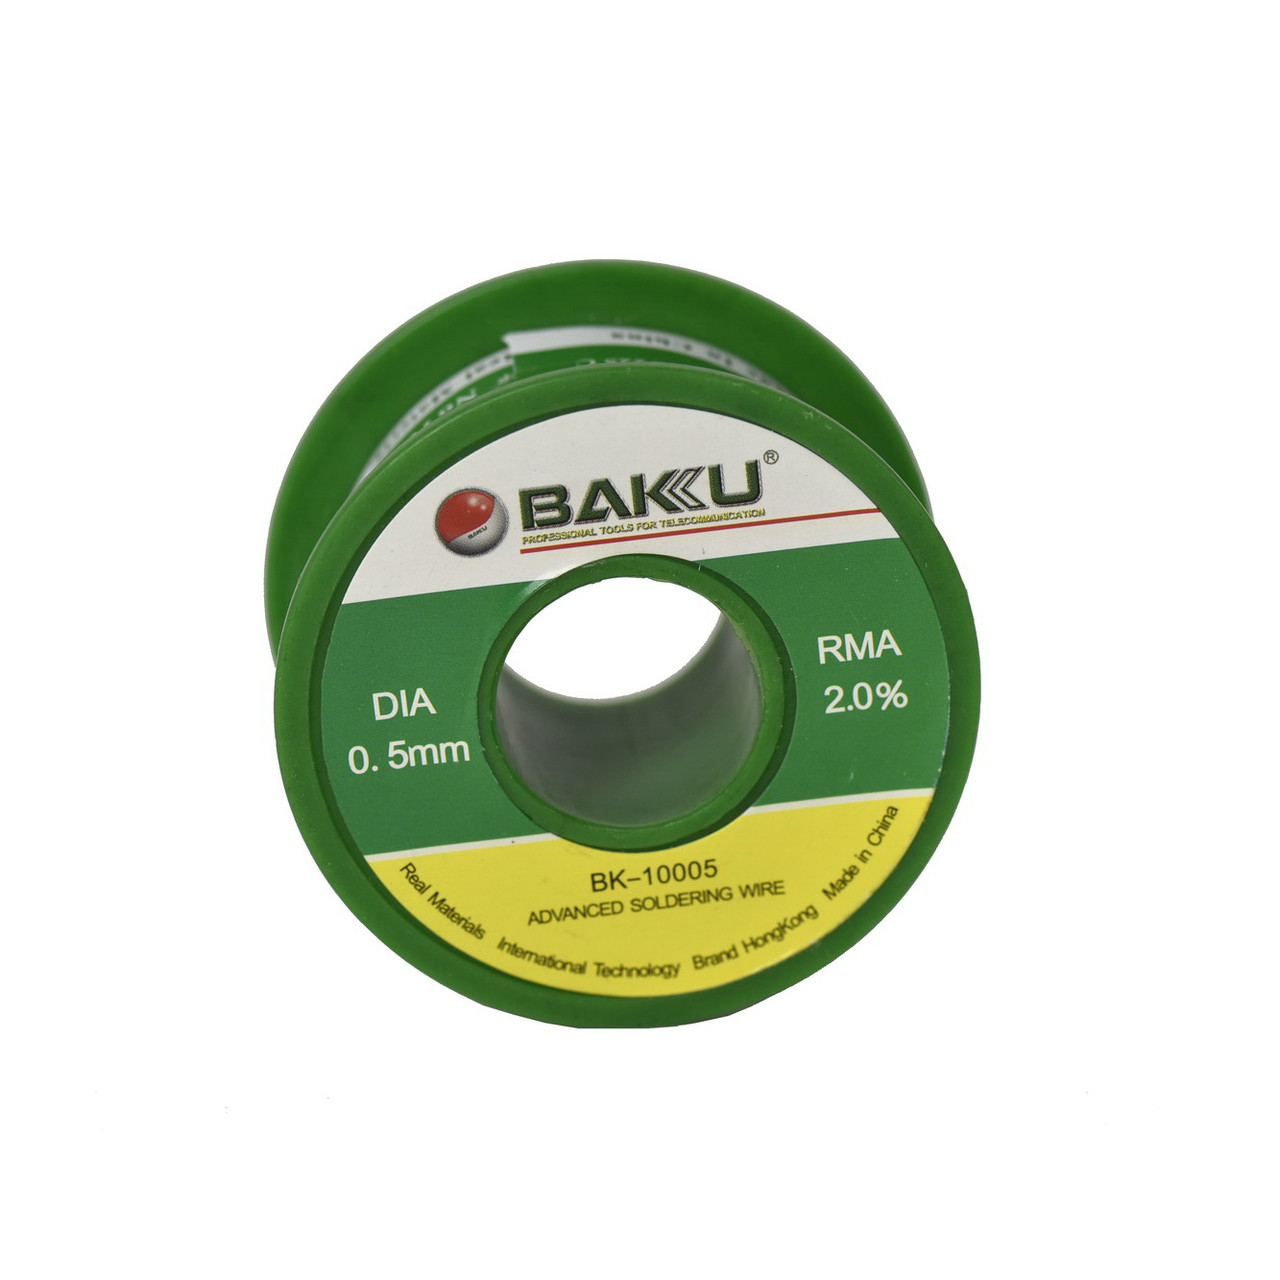 Олово катушка Baku BK-10005 (0,5mm) 50g